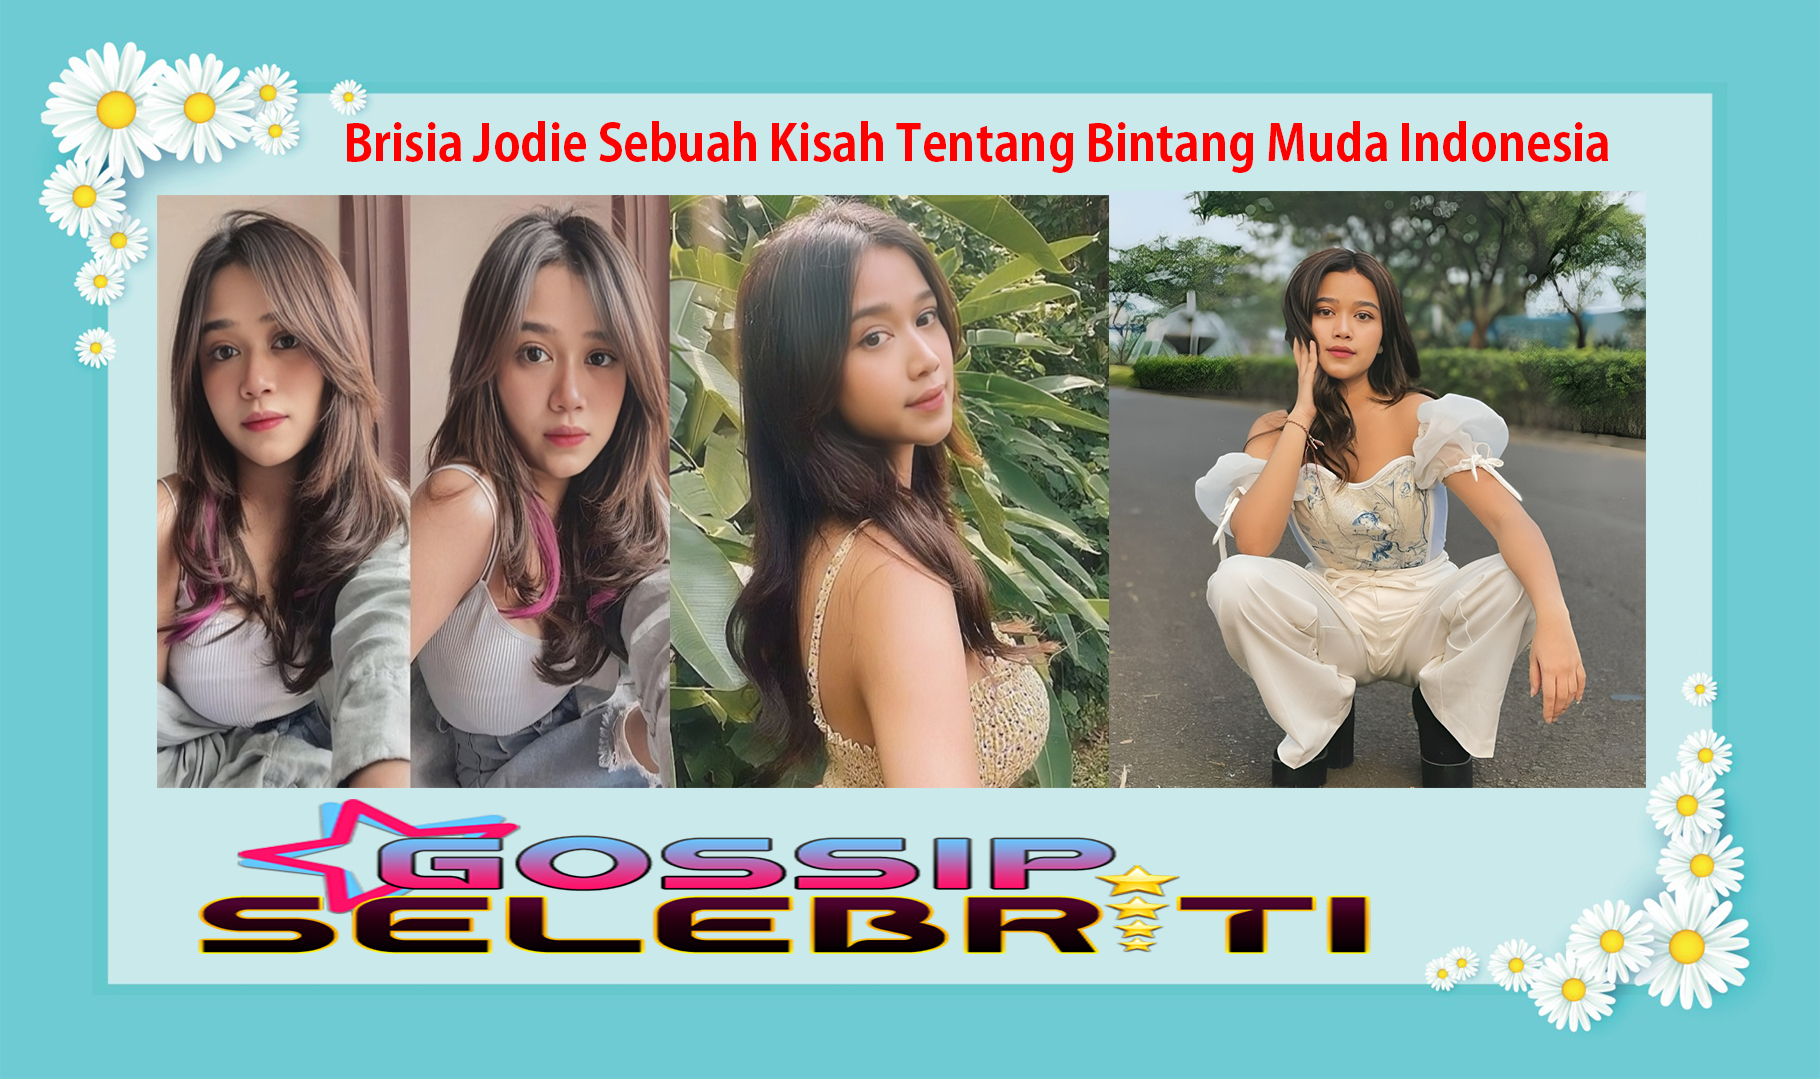 Brisia Jodie Sebuah Kisah Tentang Bintang Muda Indonesia